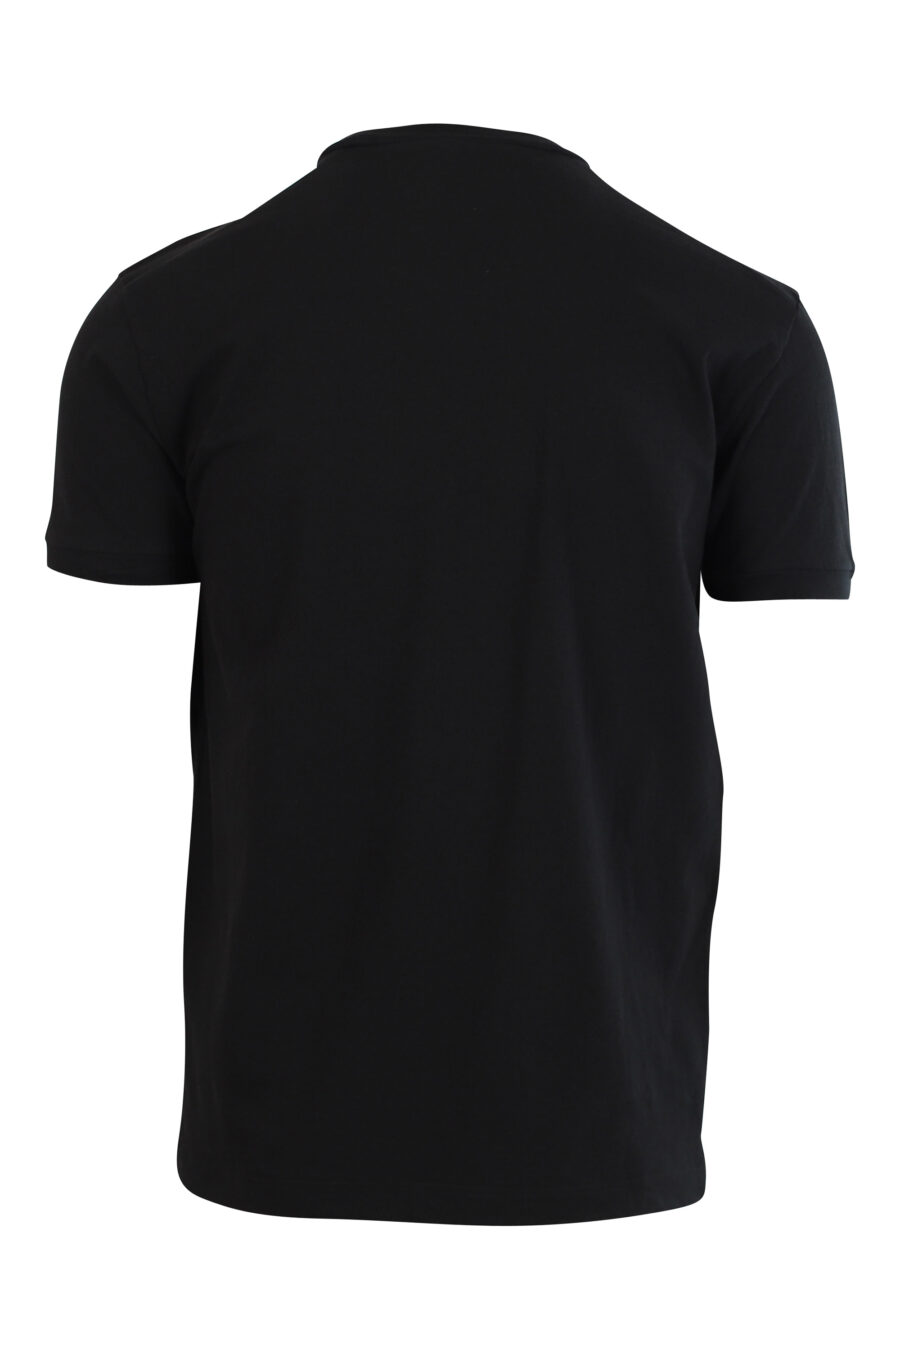 T-shirt noir avec minilogue "dsquared2 milano" - 8058049836090 2